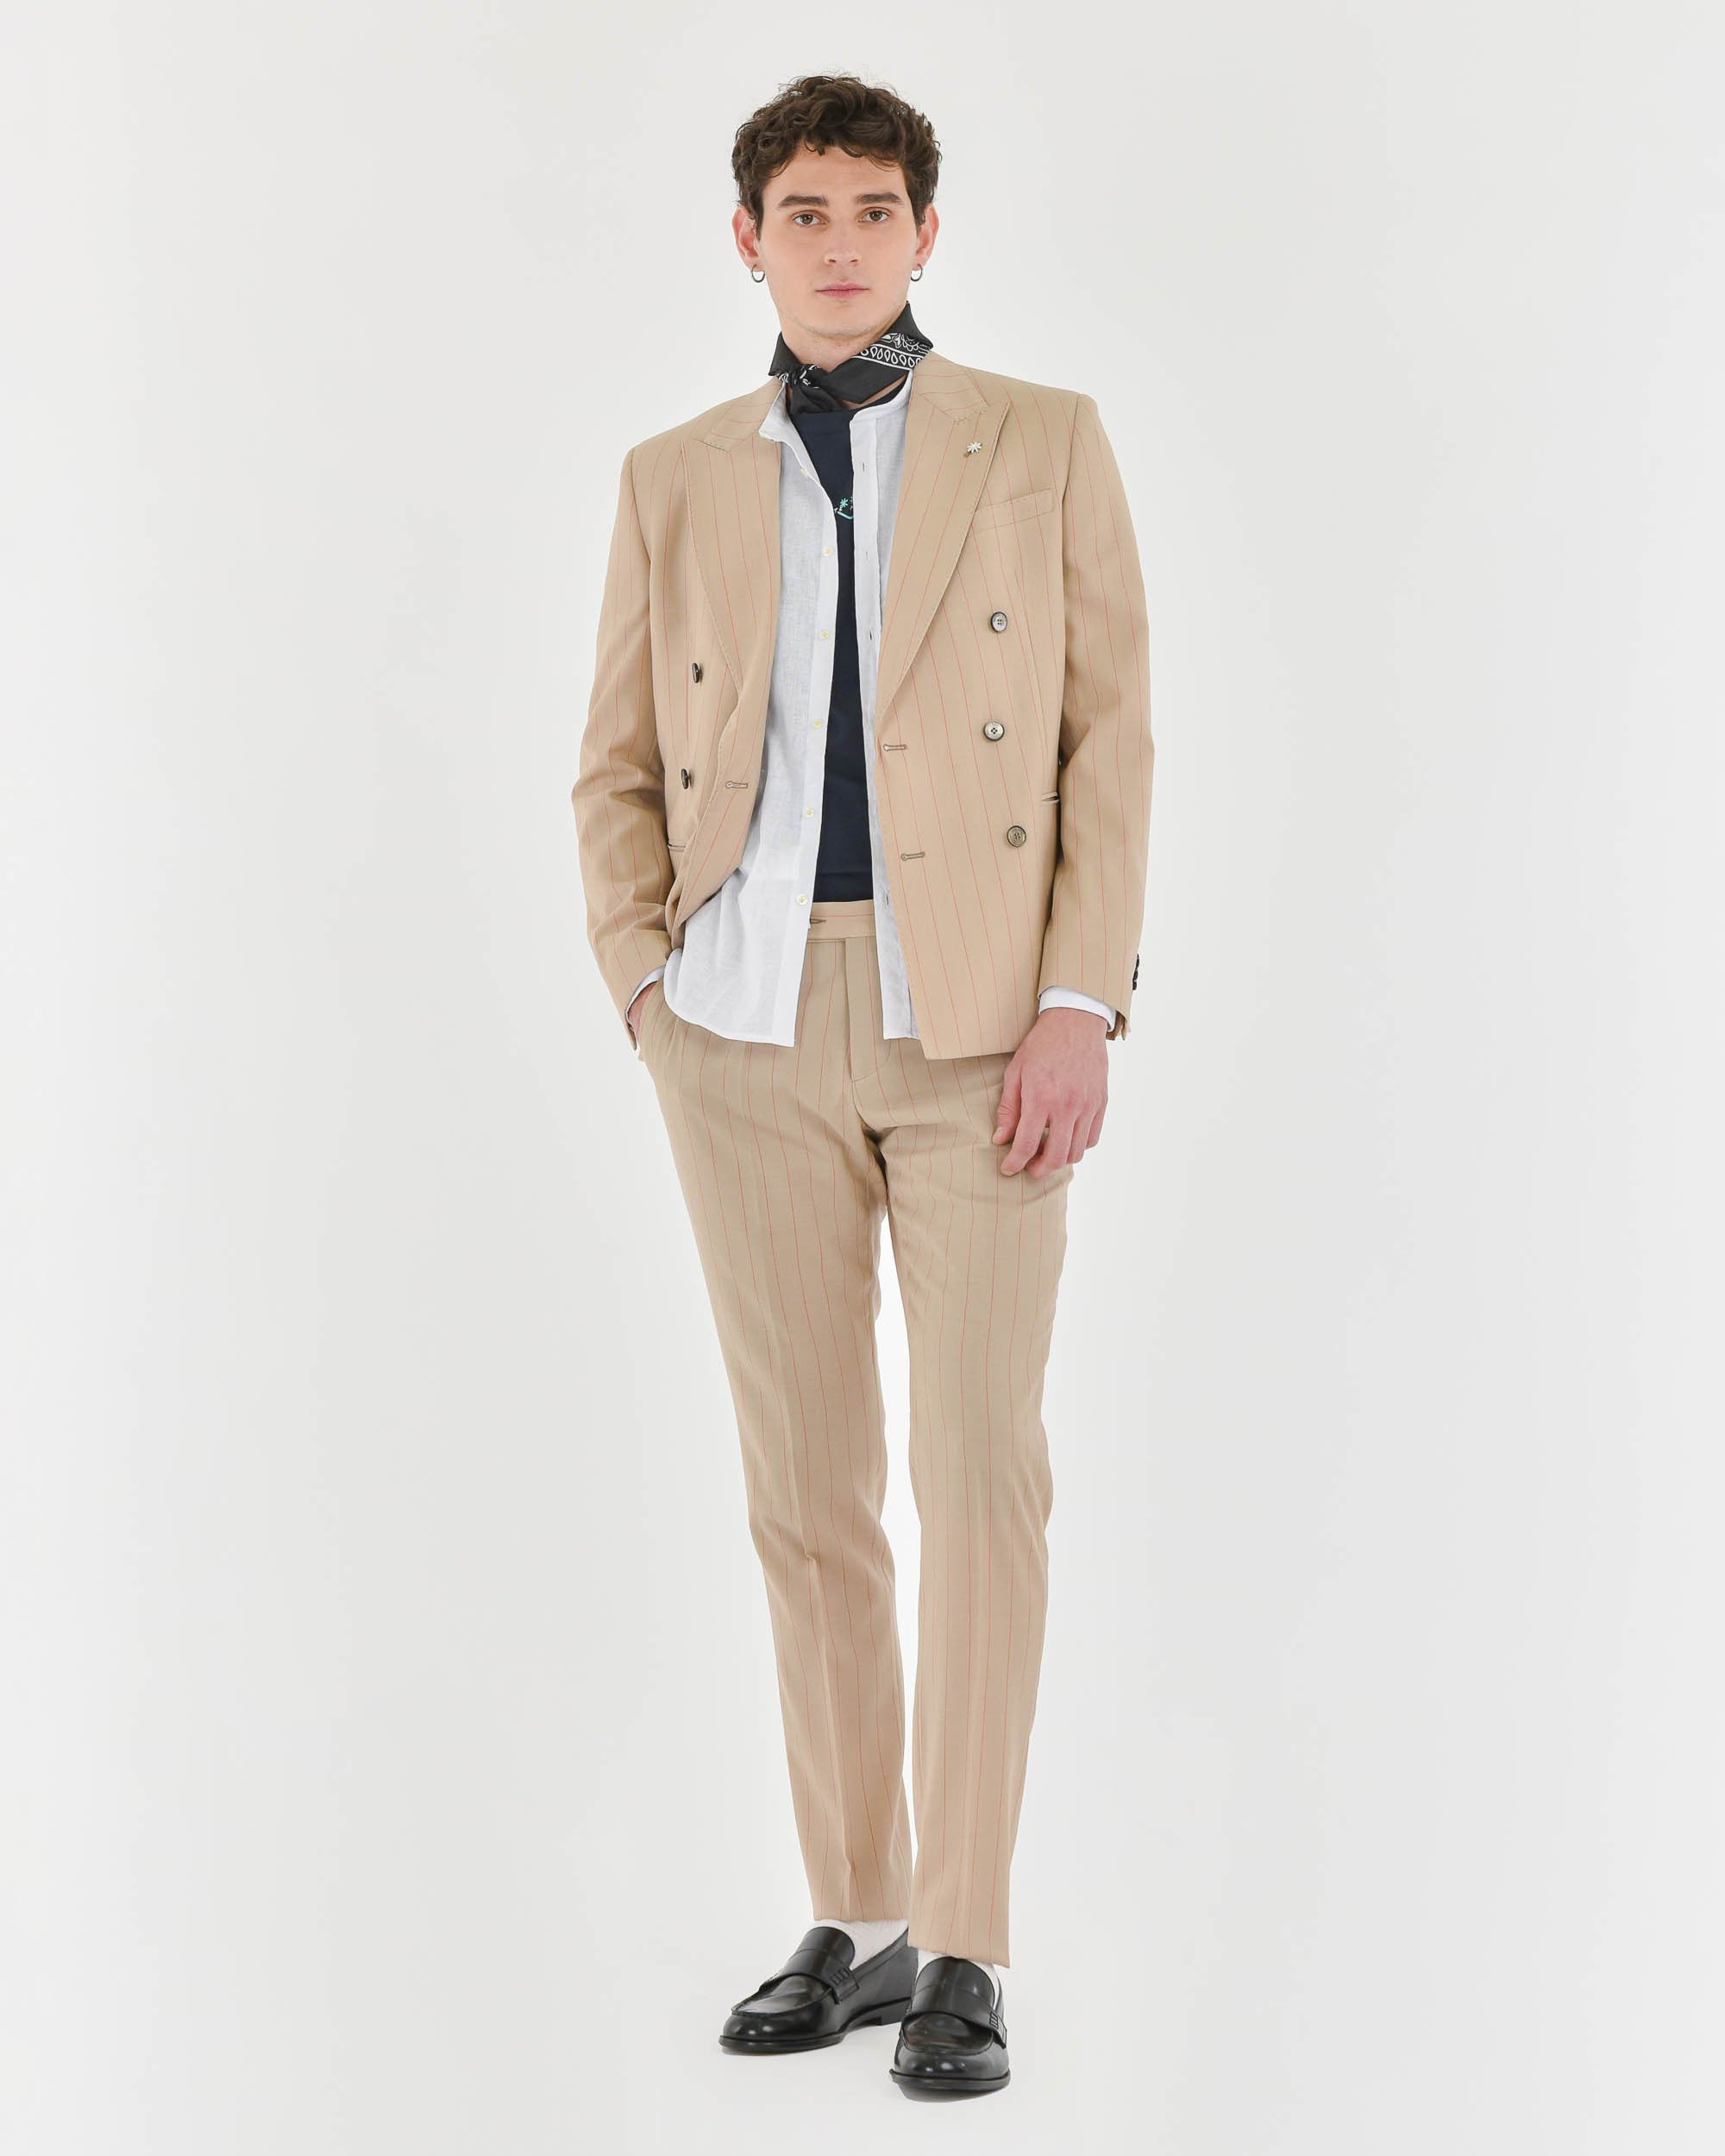 Men's Suits - Manuel Ritz Official